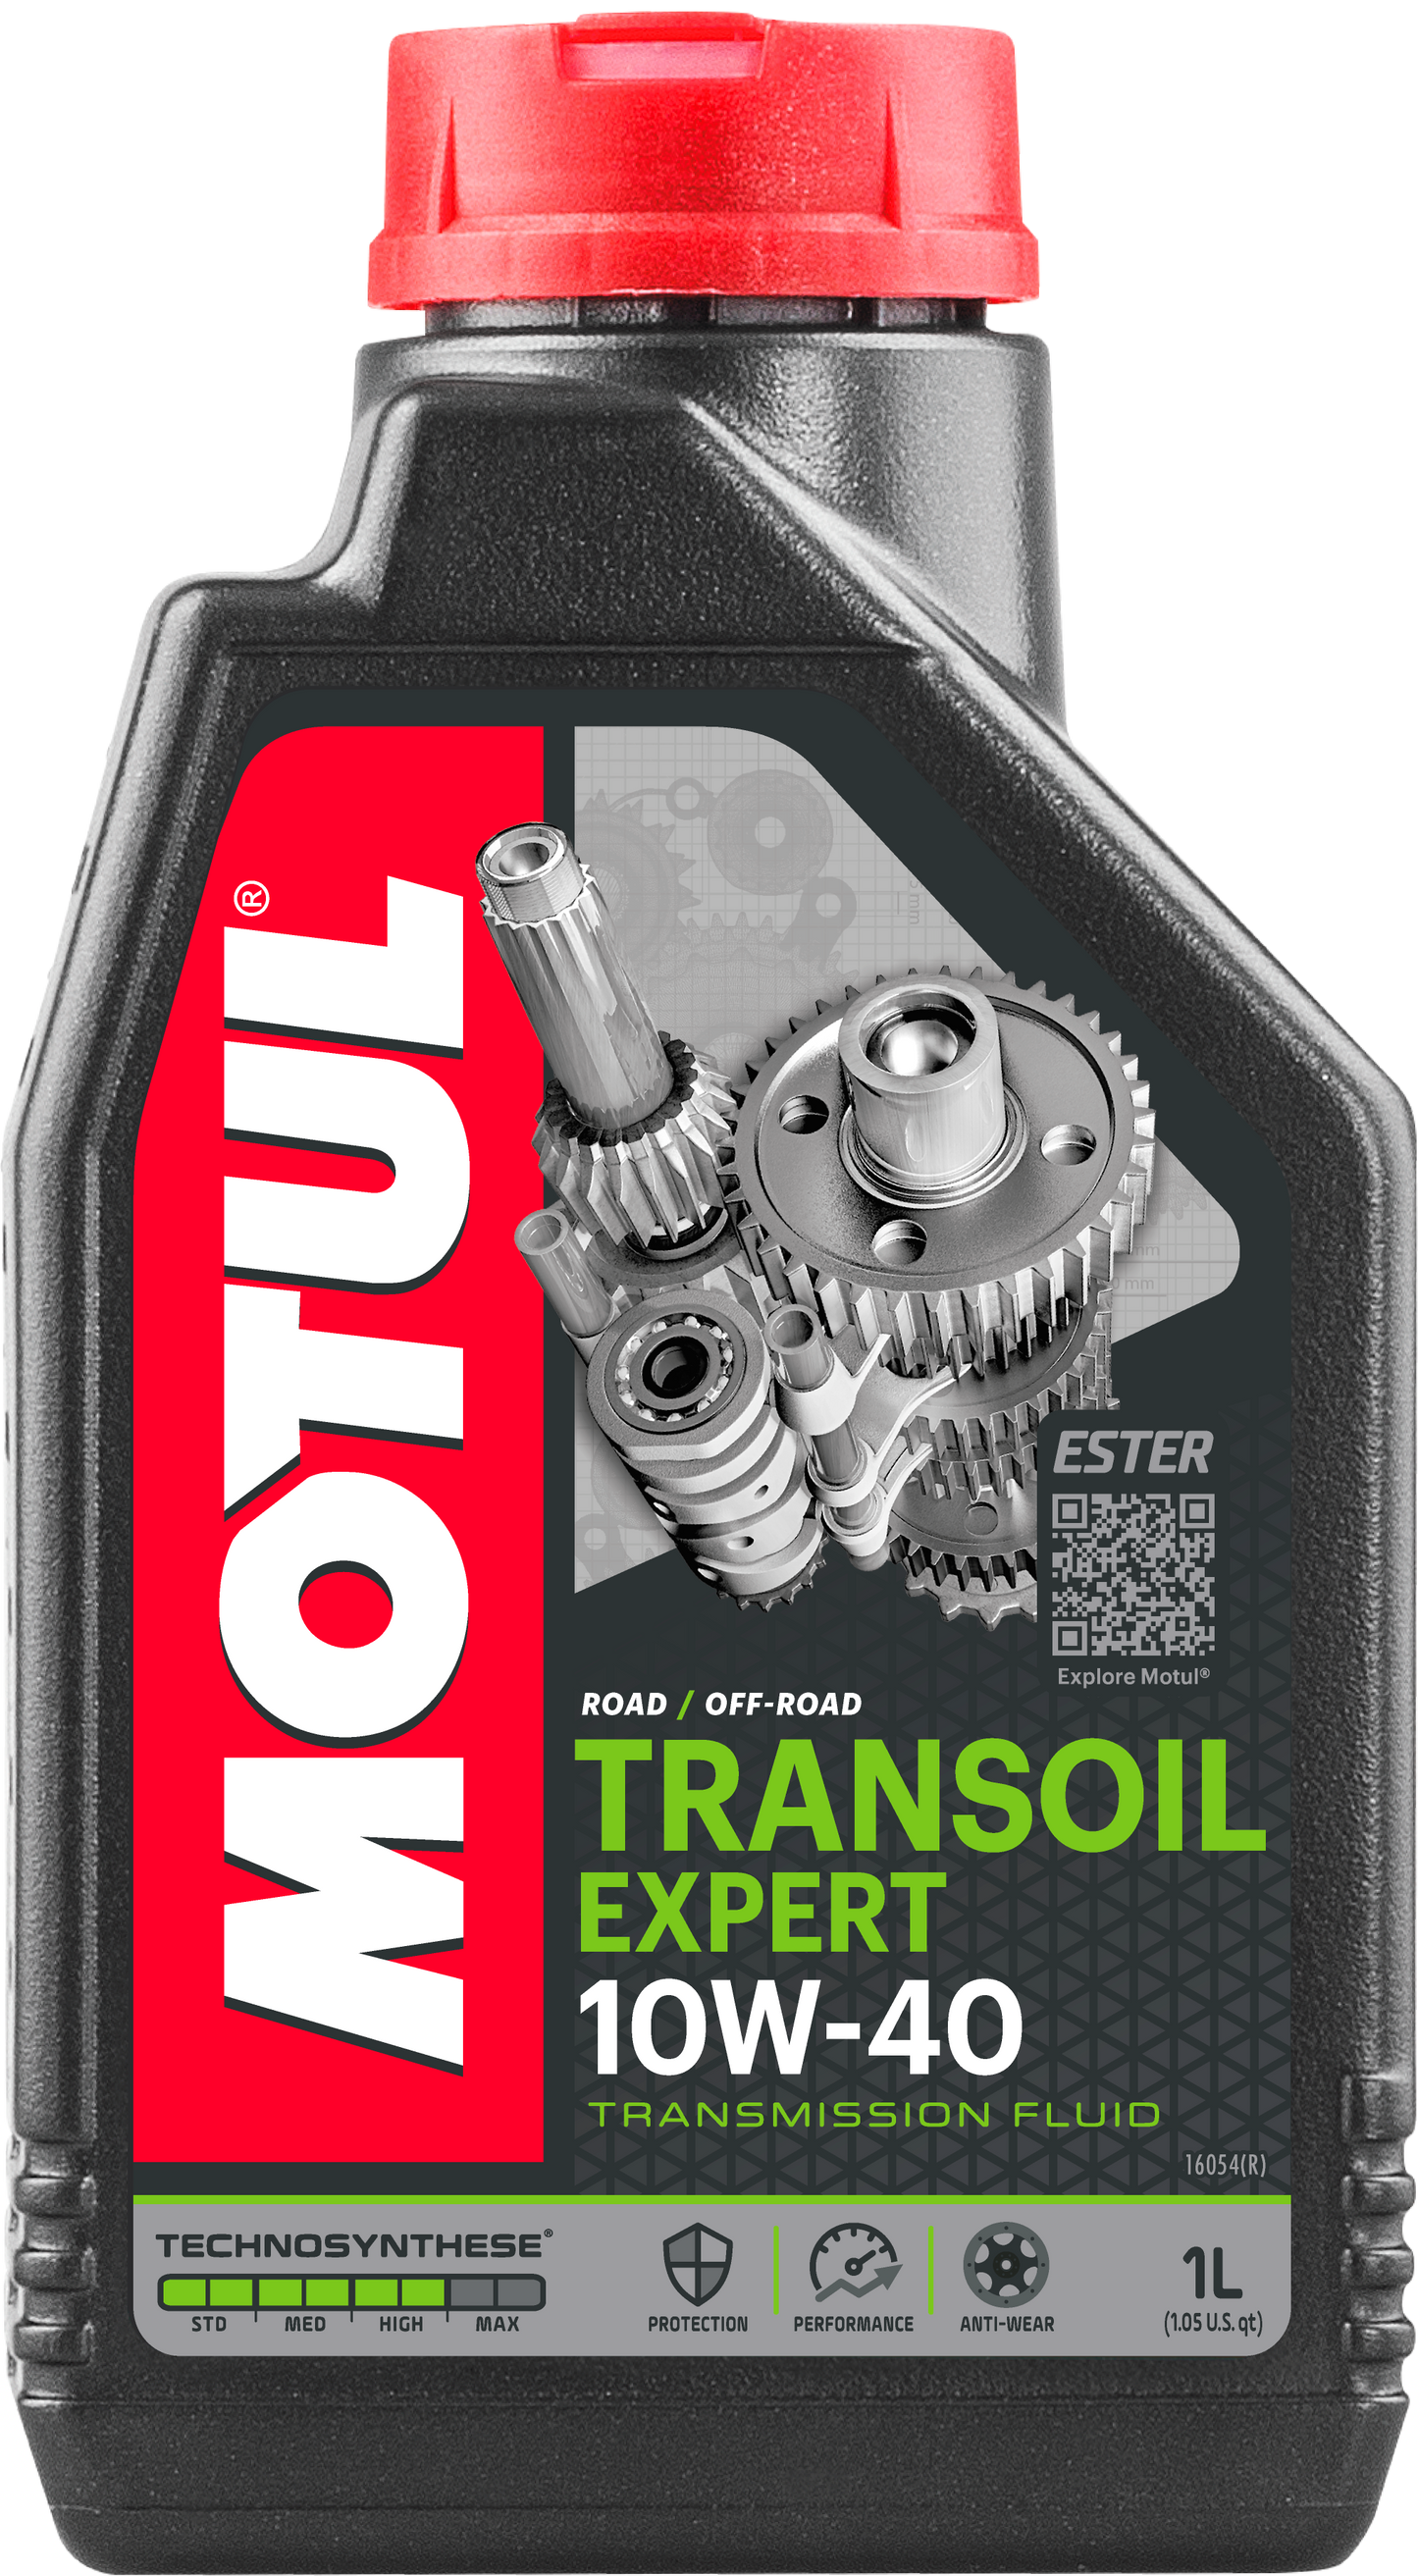 Motul Transoil Expert 10W-40, 1 liter